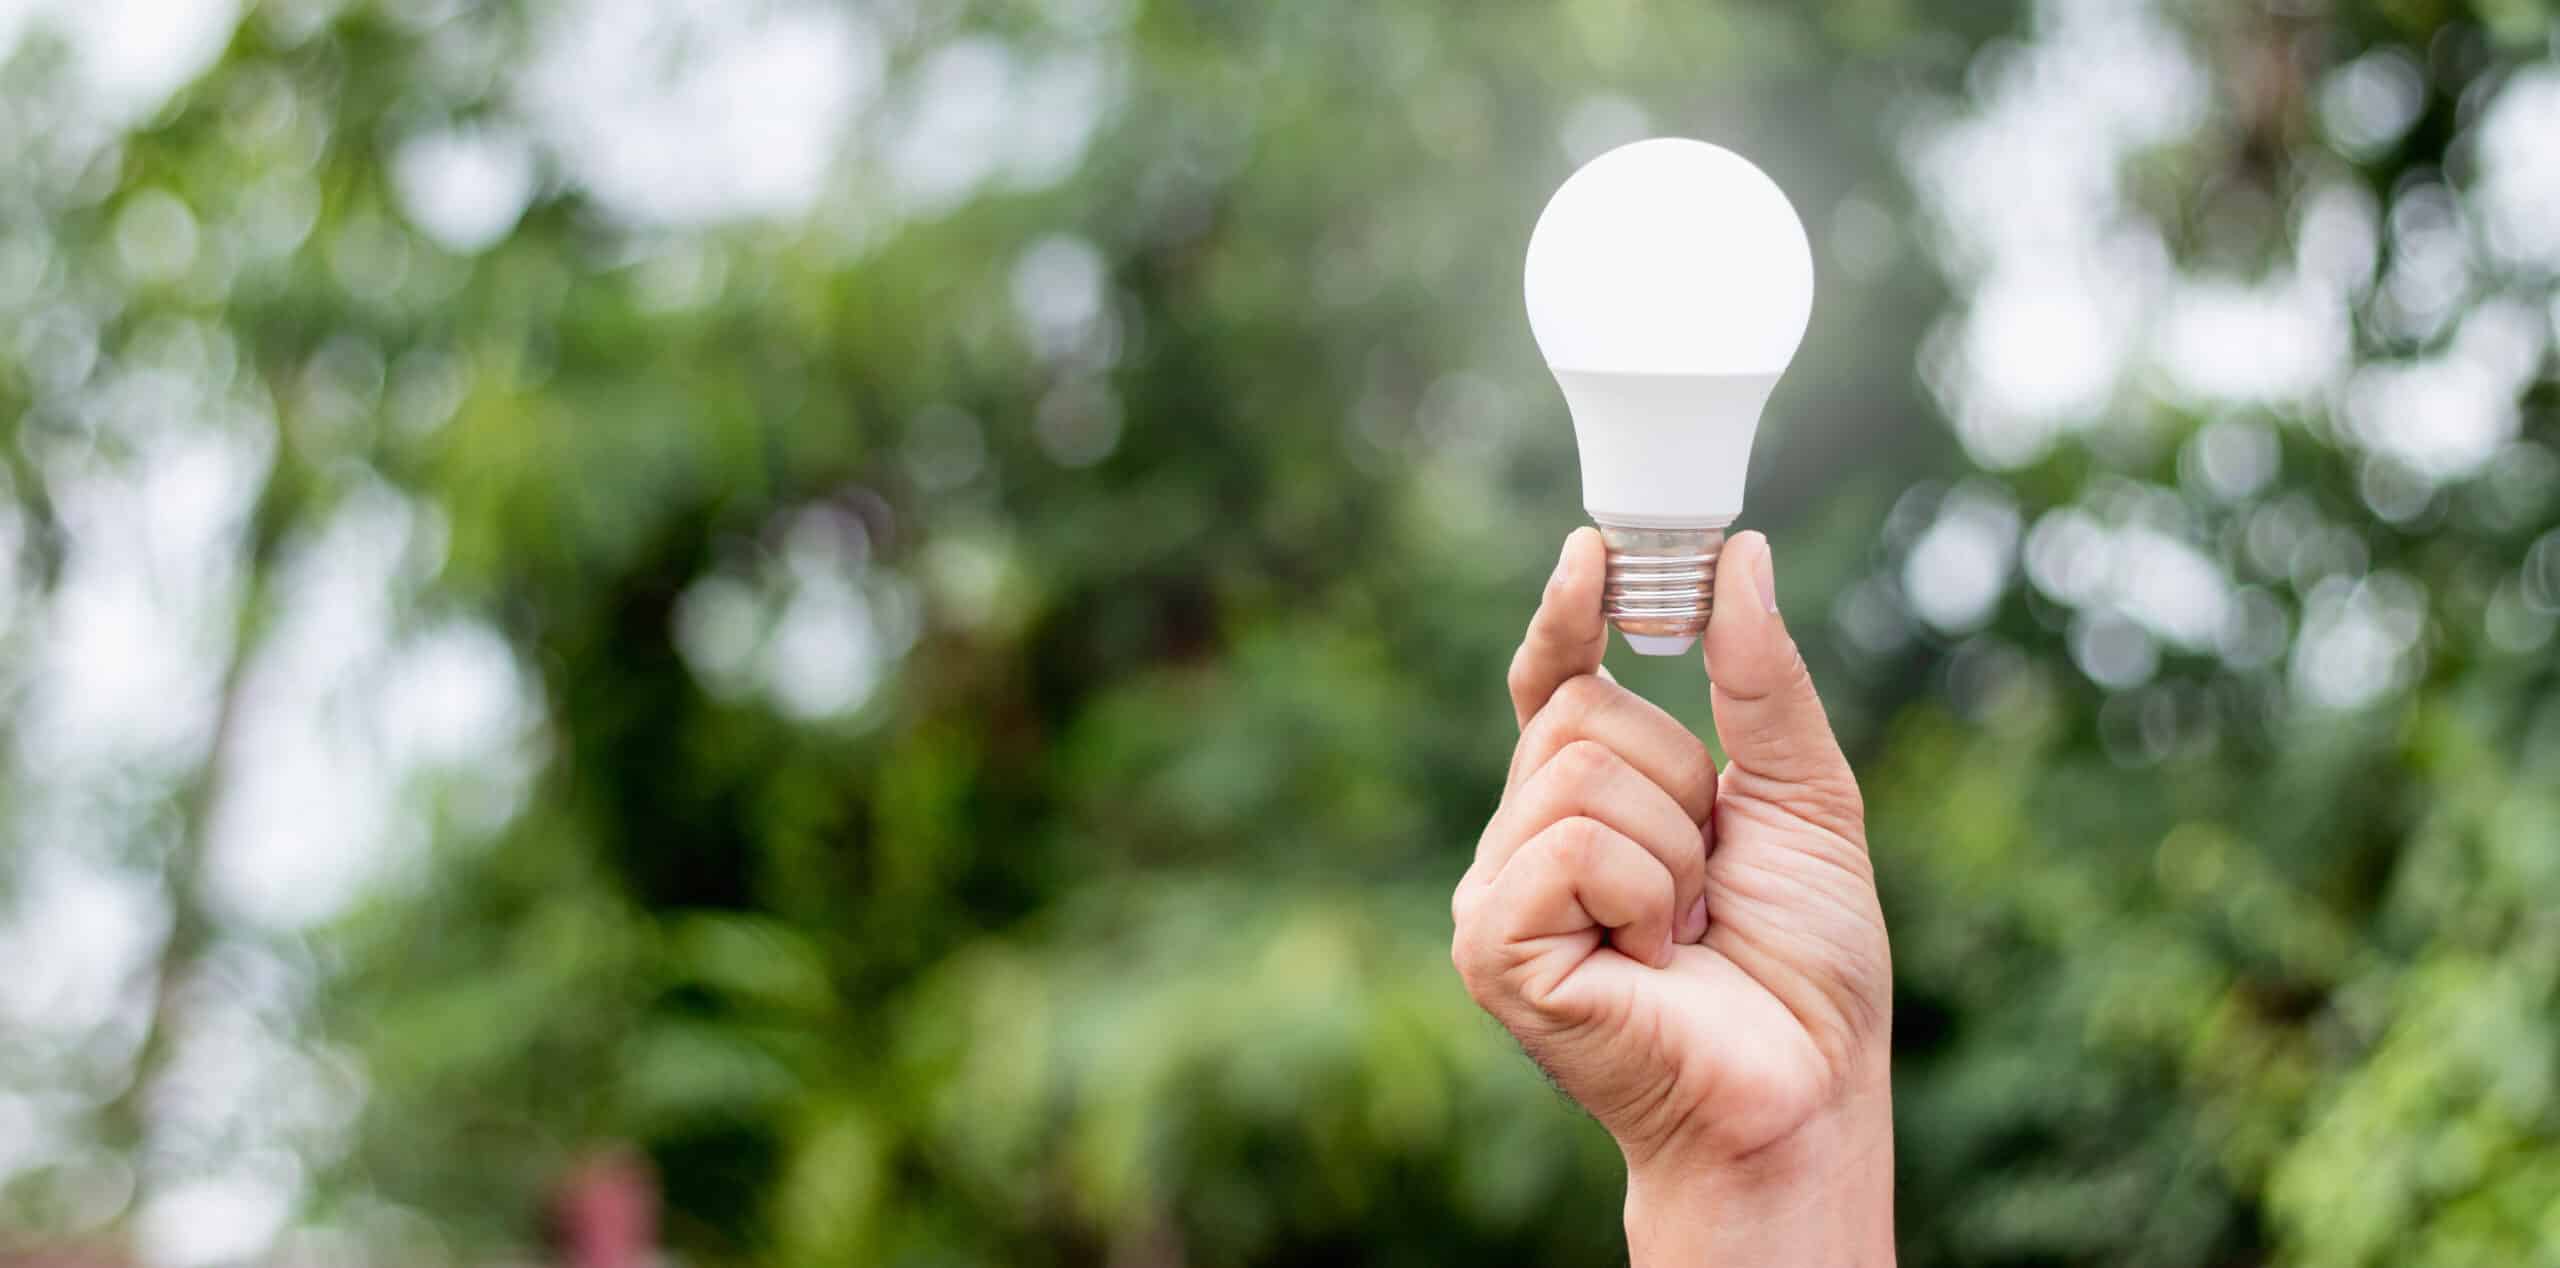 Energieaudit für Beleuchtung: Dauerhaft Energie sparen